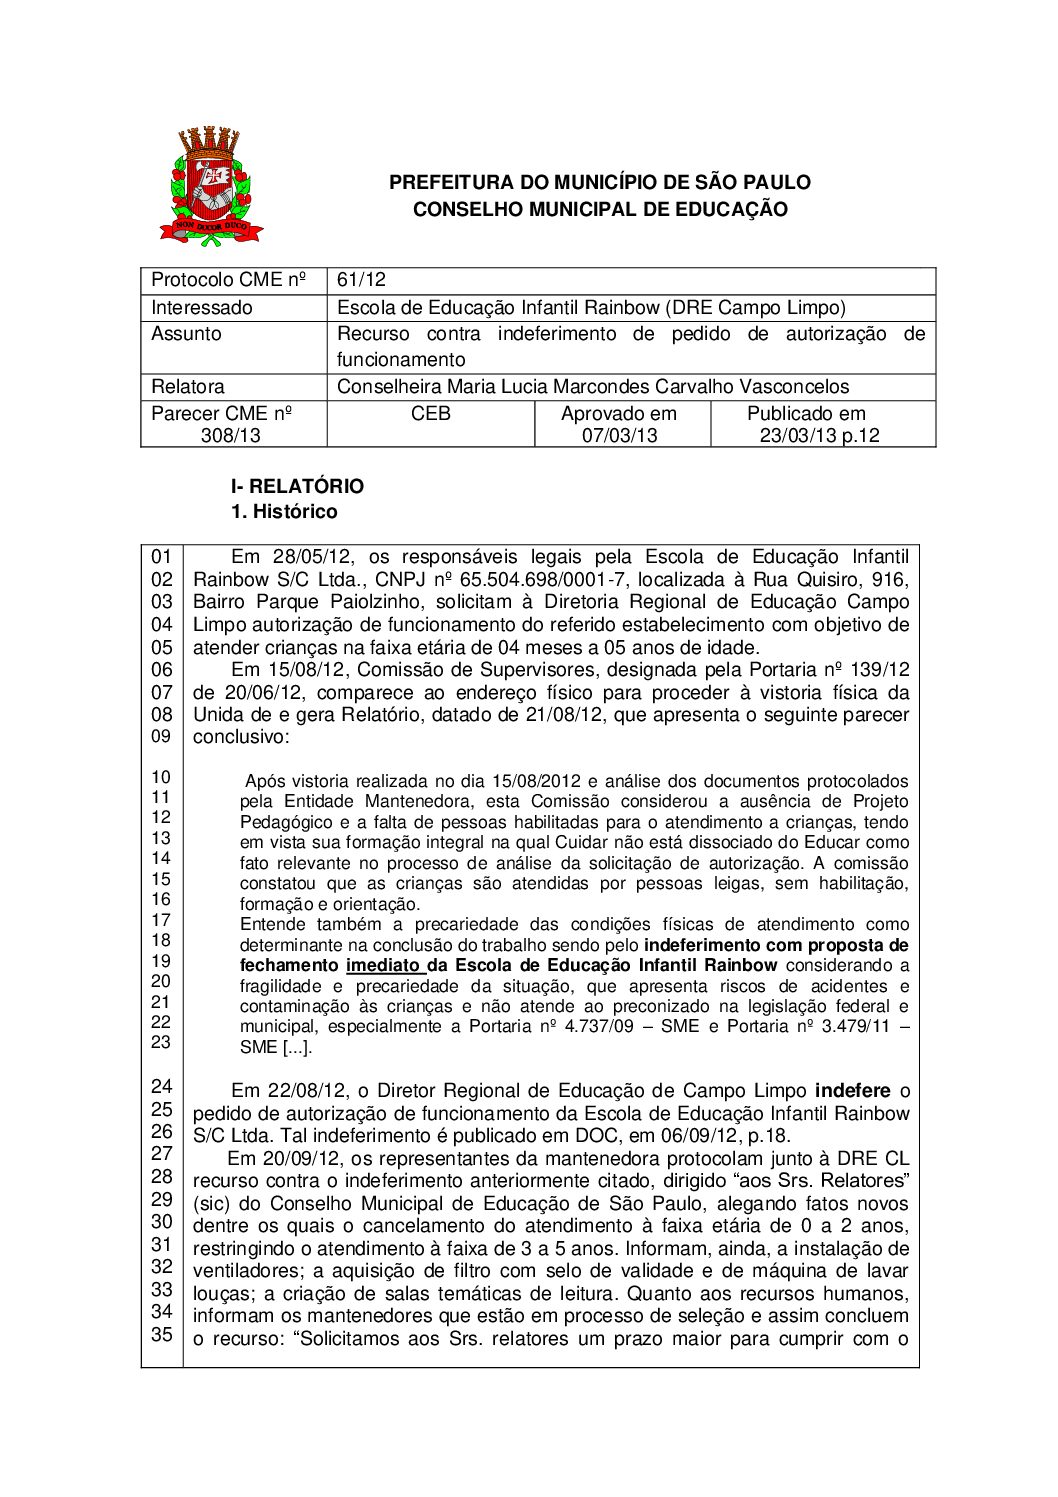 Parecer CME nº 308/2013 - Escola de Educação Infantil Rainbow (DRE Campo Limpo) - Recurso contra indeferimento de pedido de autorização de funcionamento 